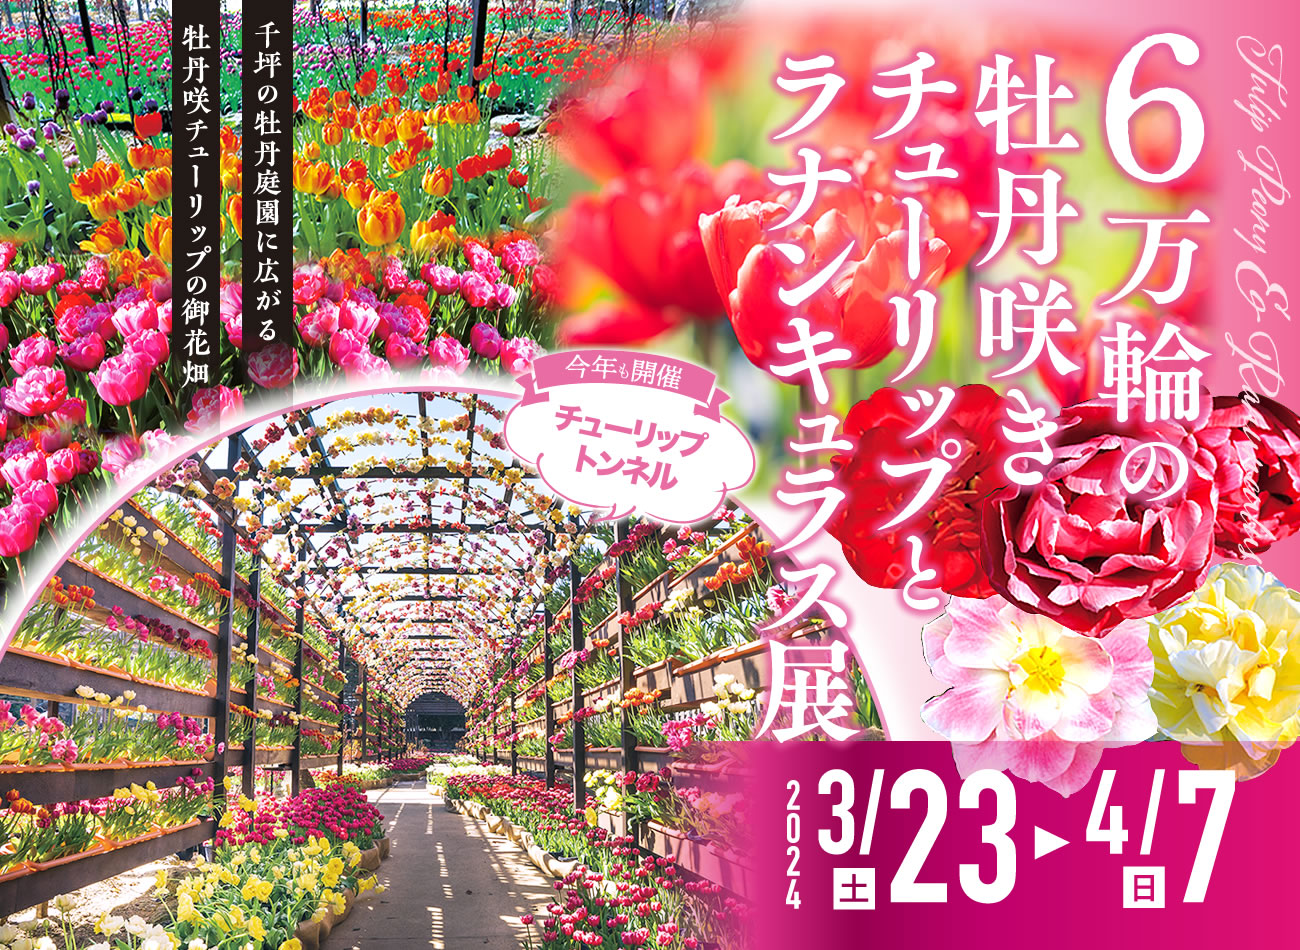 日本庭園 由志園「6万輪の牡丹咲きチューリップとラナンキュラス展」